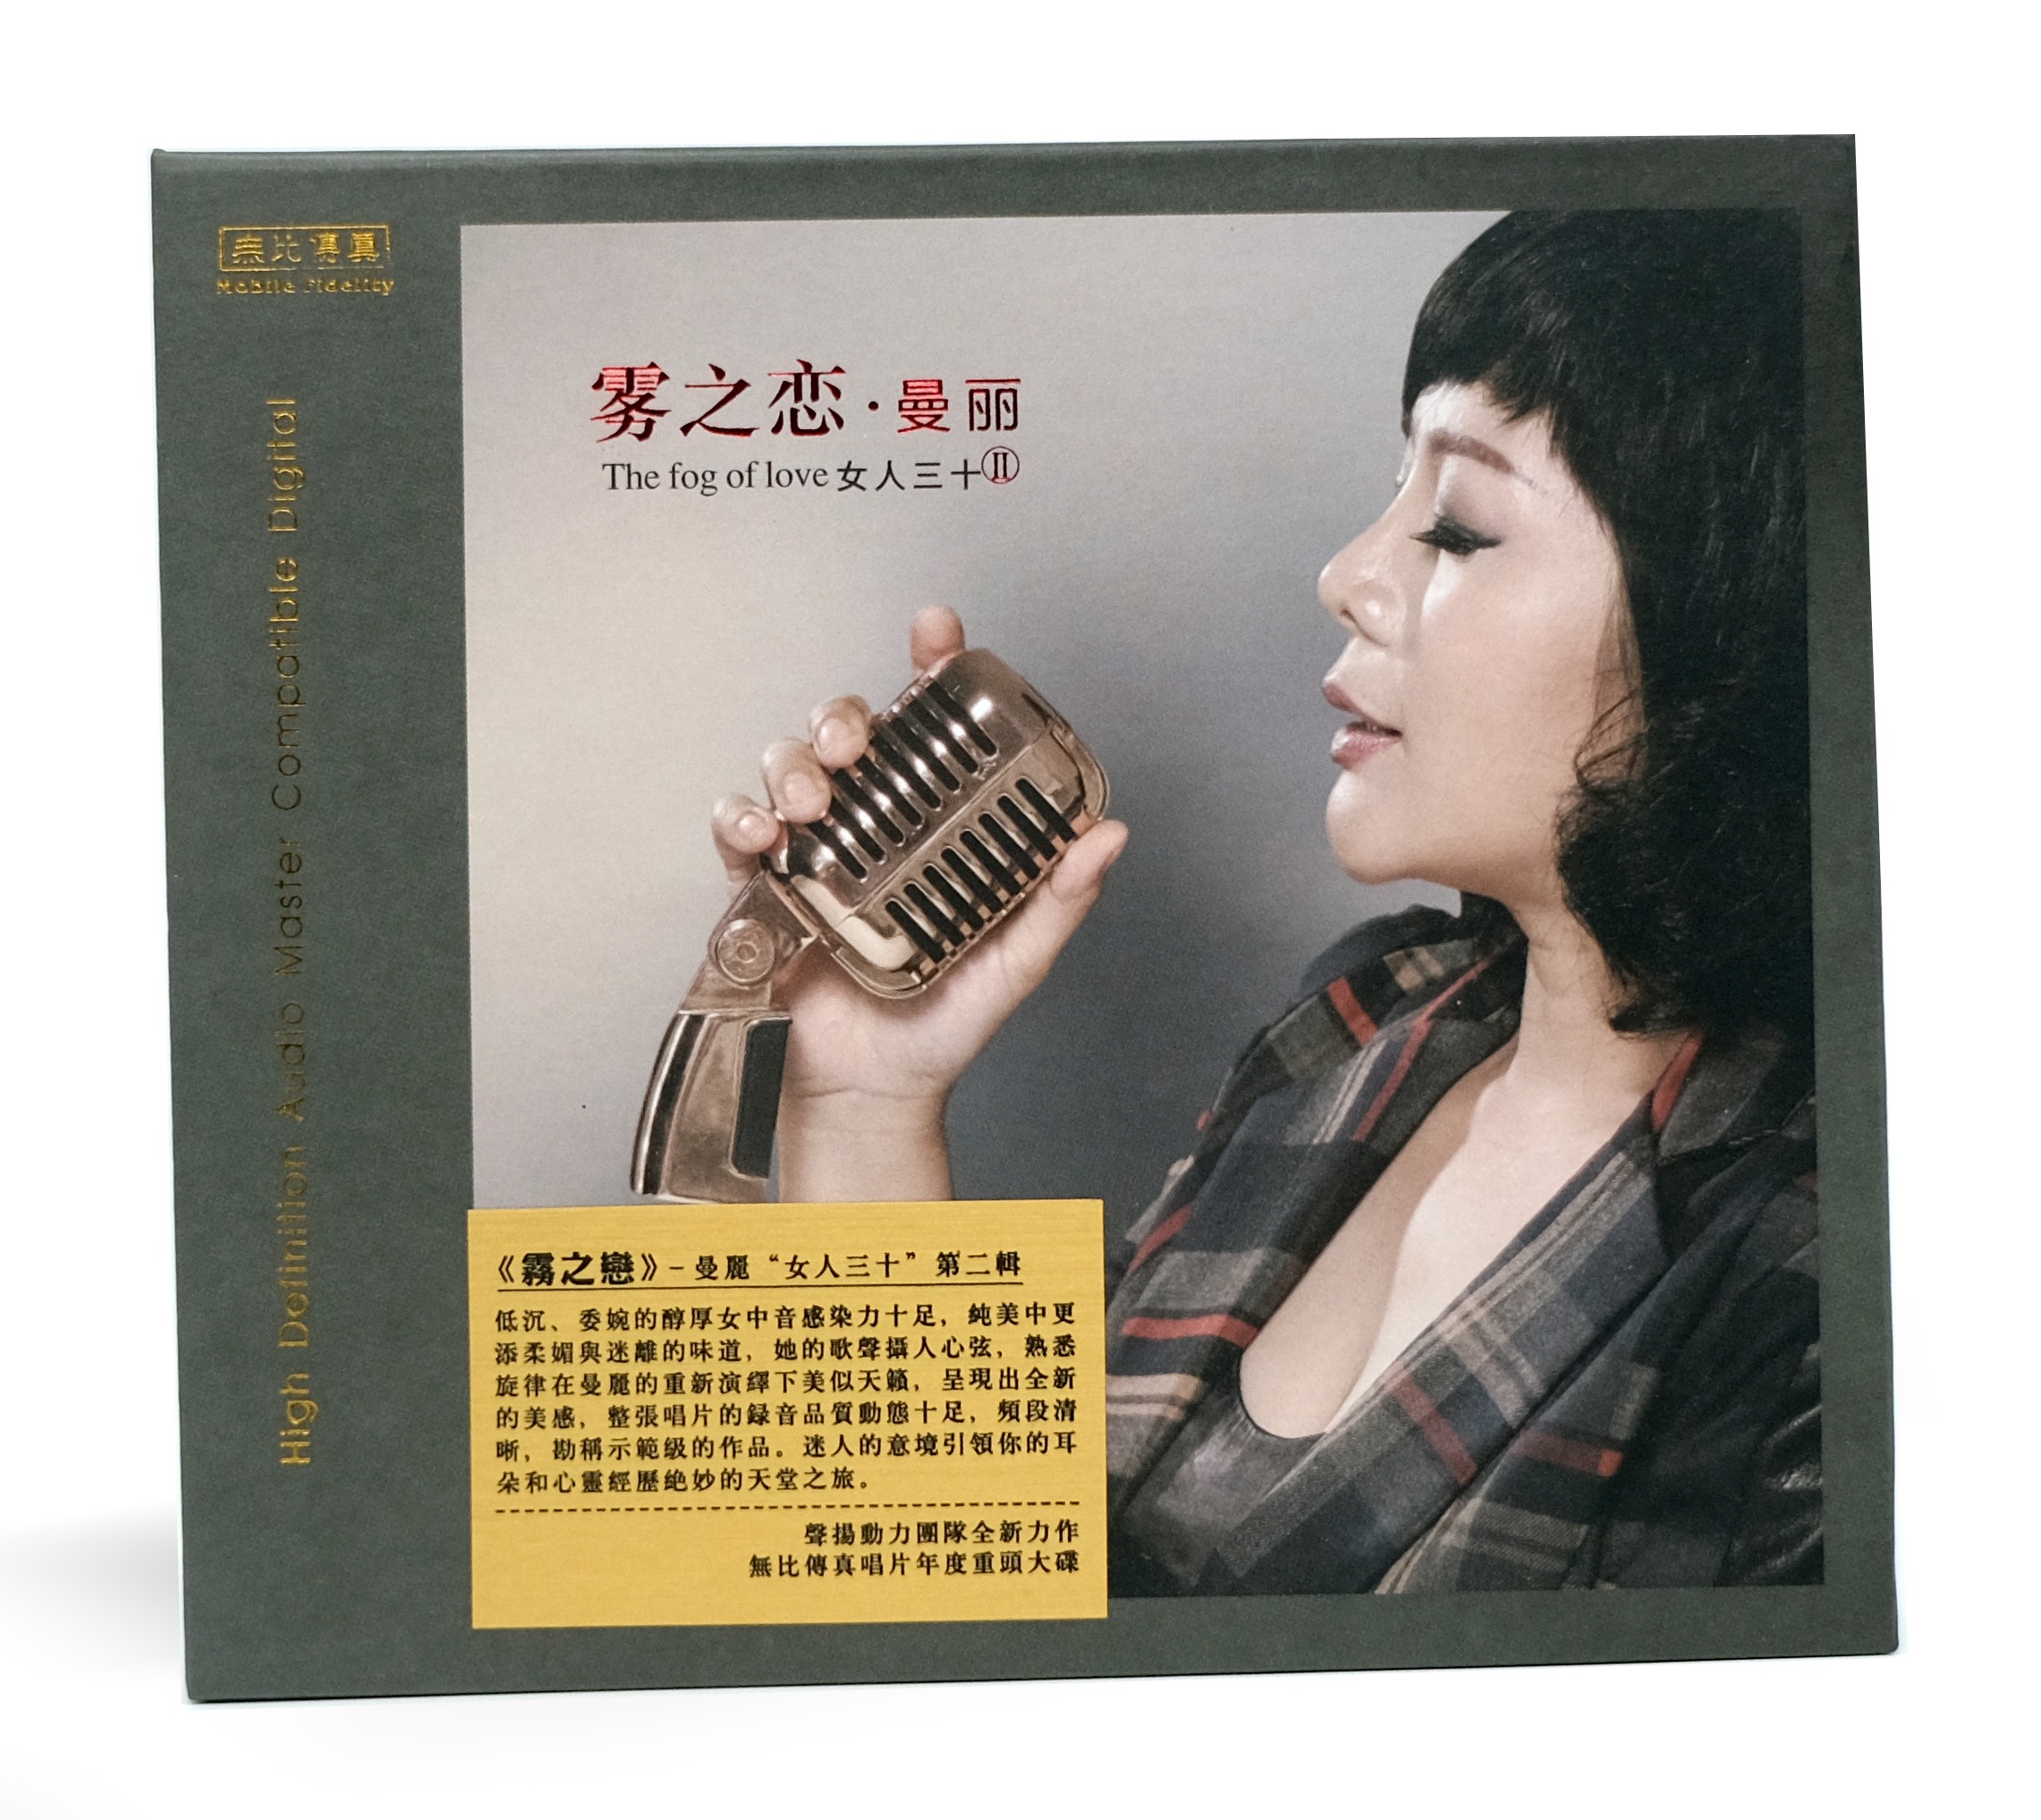 曼丽 《女人三十2 雾之恋》首版CD 无比传真 正版  经典 发烧 唱片